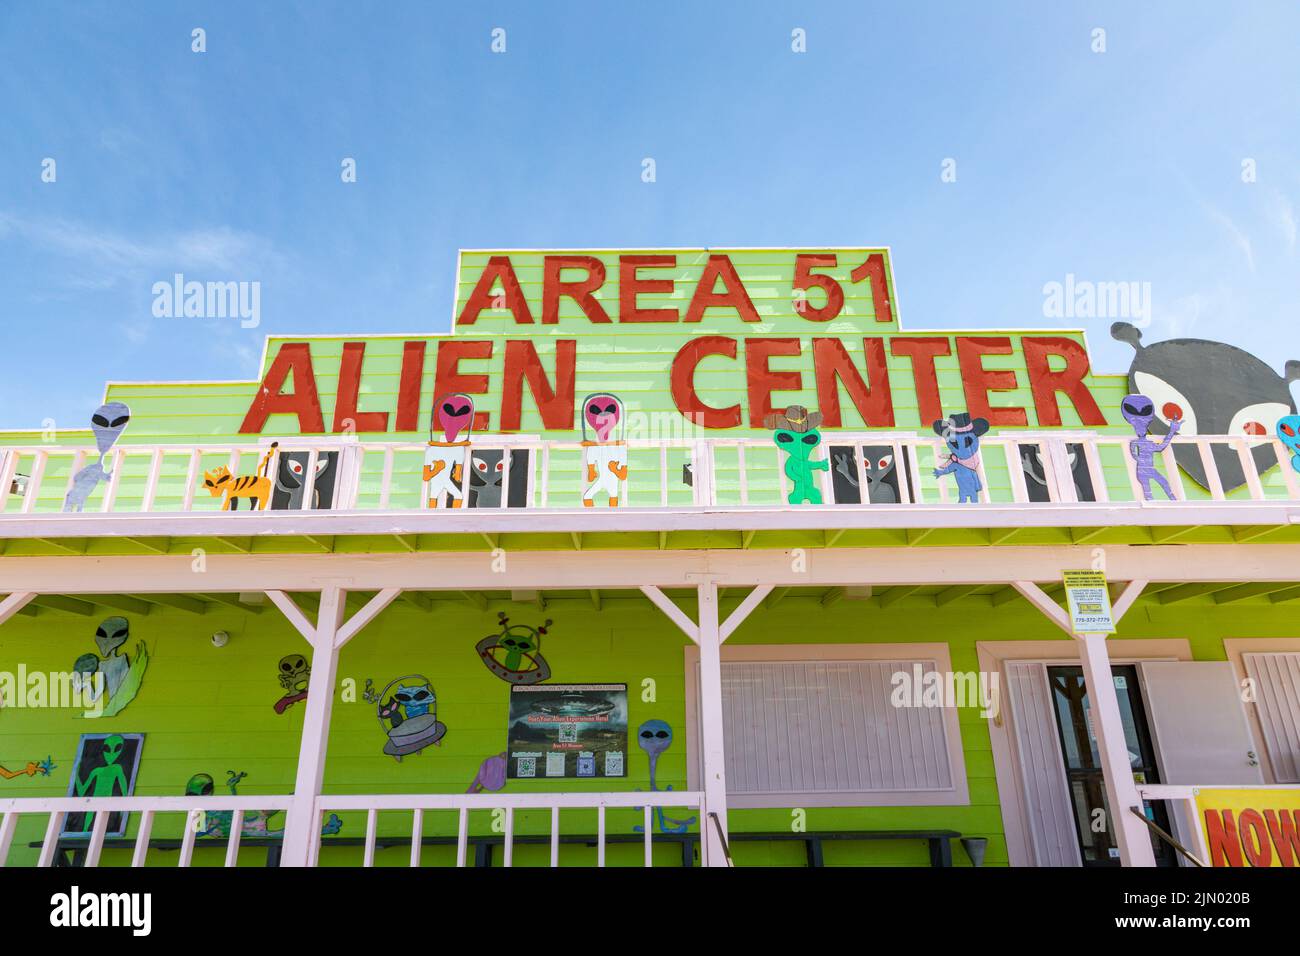 Pahrump, EE.UU. - 23 de mayo de 2022: Área 51 Alien Center tienda de conveniencia y estación de gasolina en la carretera de Las Vegas a Death Valley con decoración alienígena. Foto de stock